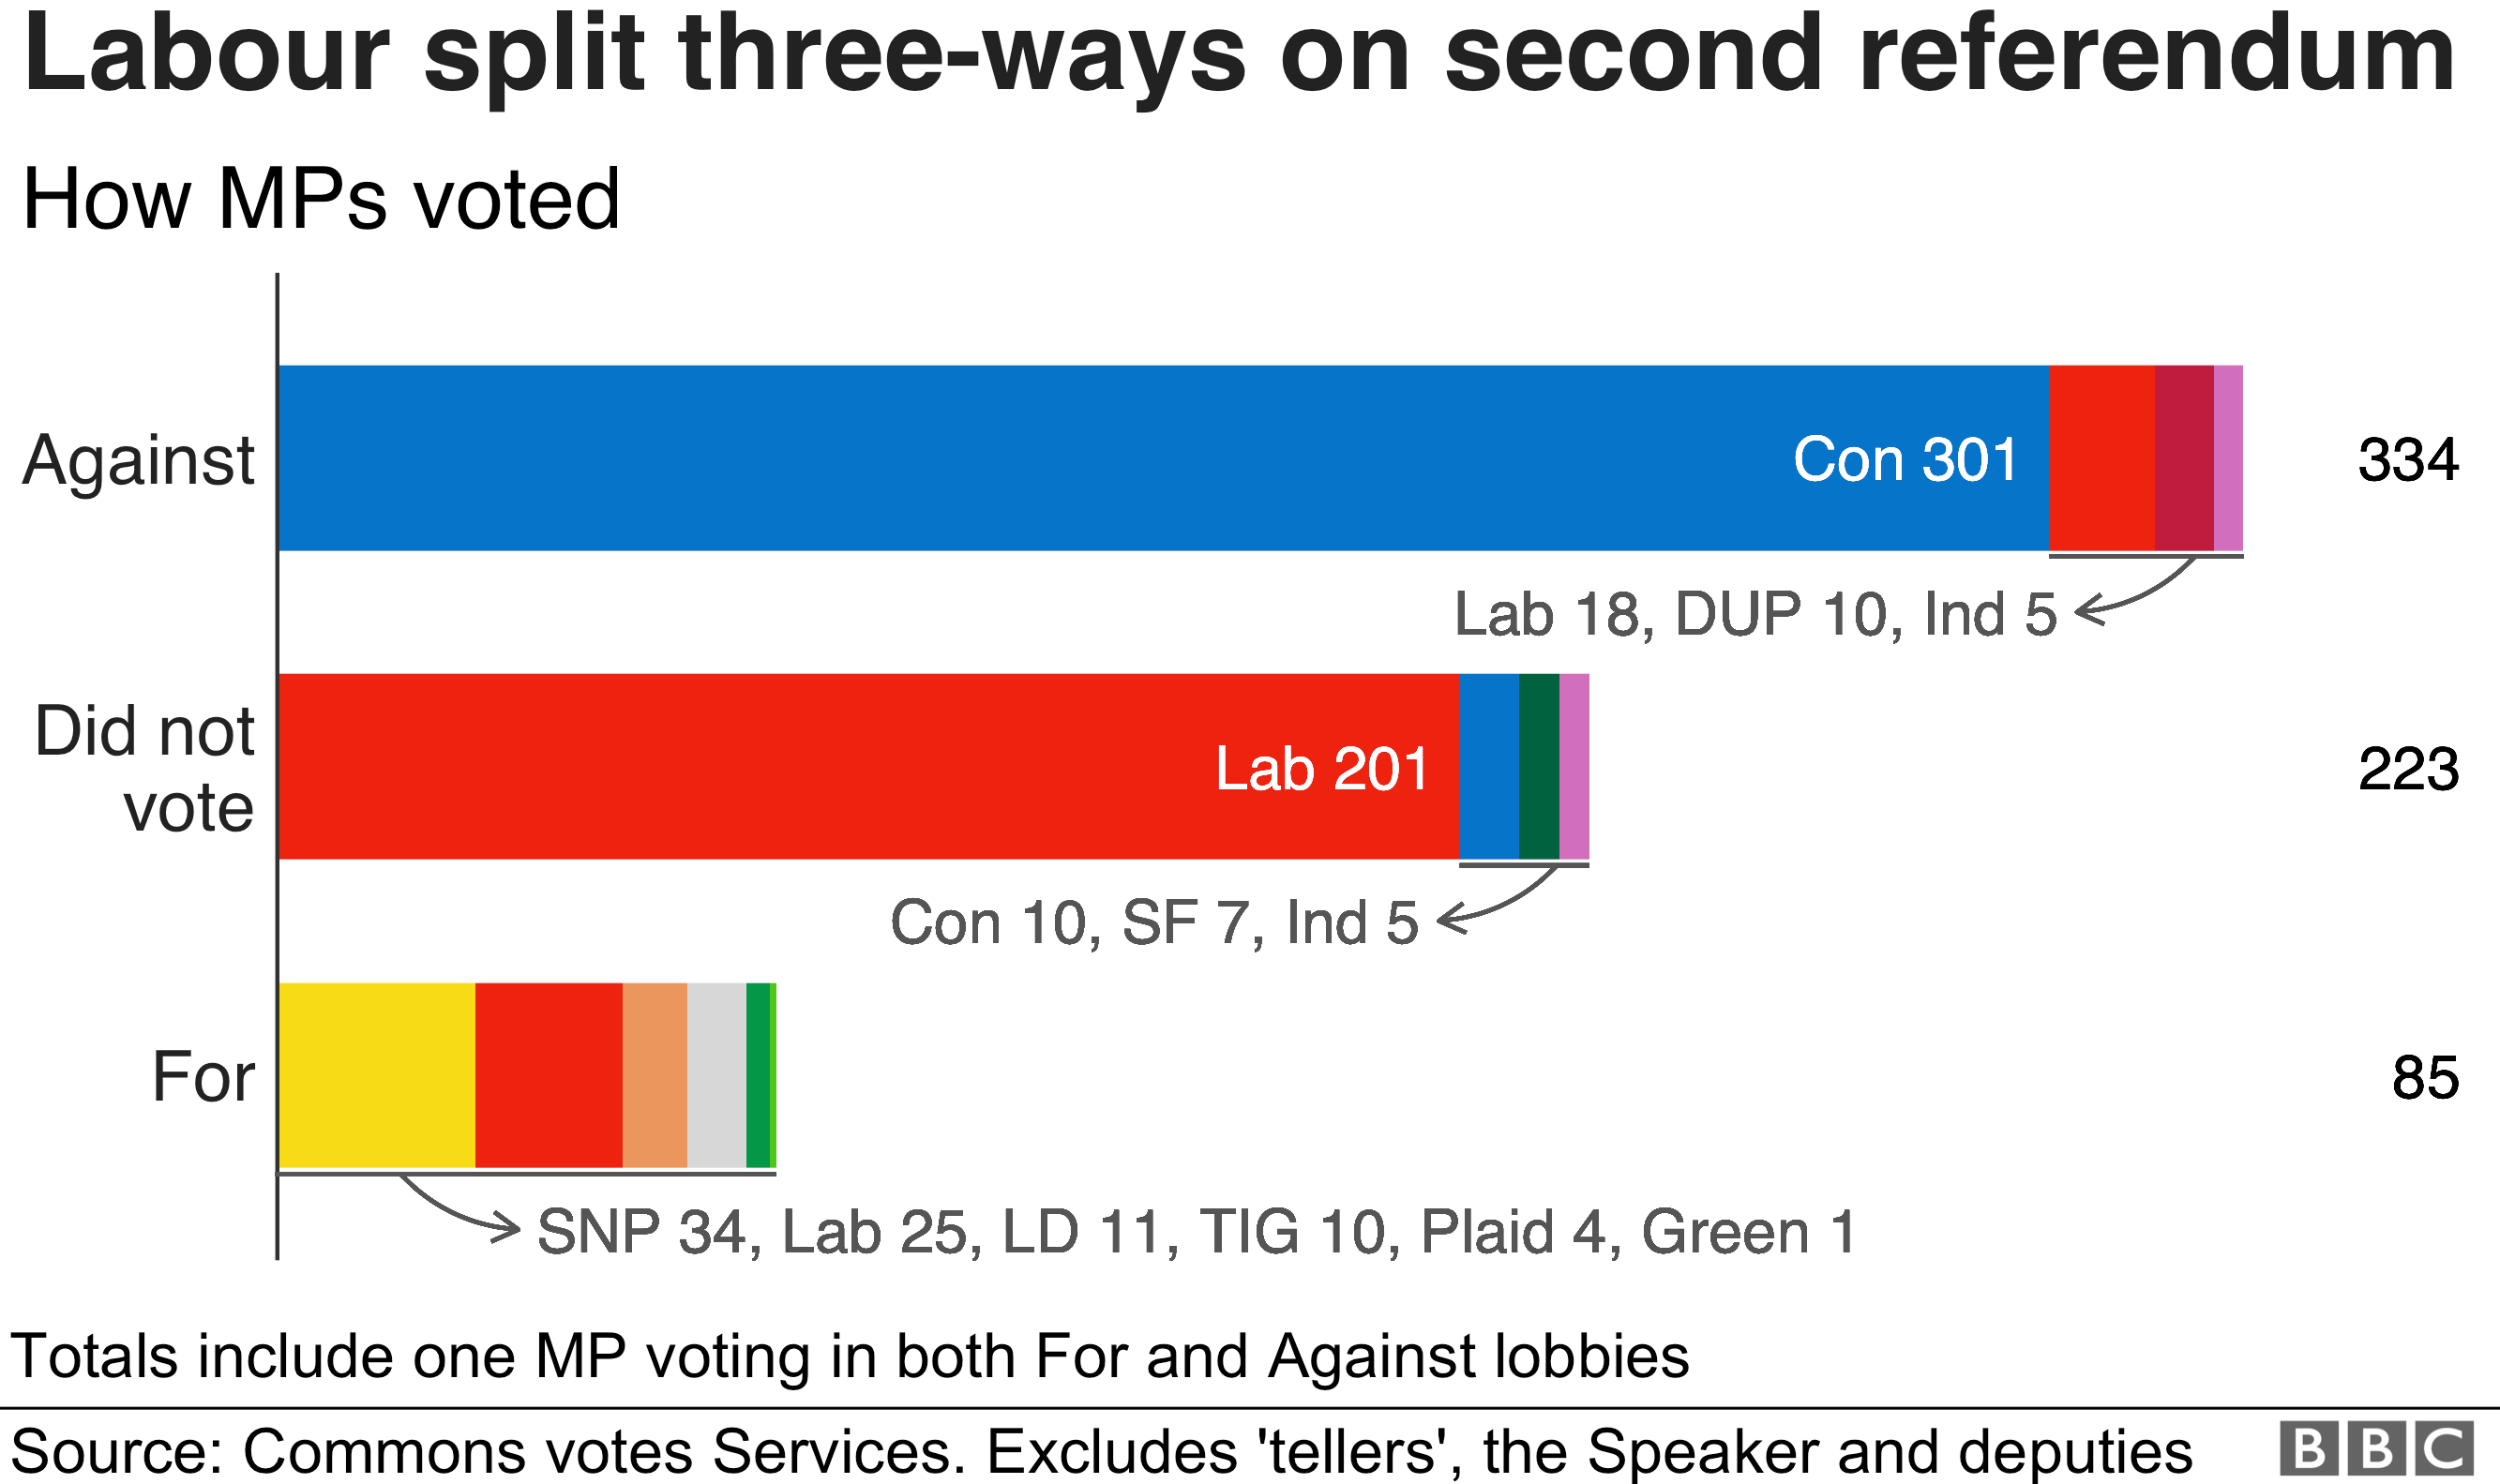 Диаграмма, показывающая, как 41 депутат от лейбористов сломал партийный кнут, и на втором референдуме Лейбористская партия была разделена на три части: 18 депутатов проголосовали против, 201 не проголосовали и 25 проголосовали за